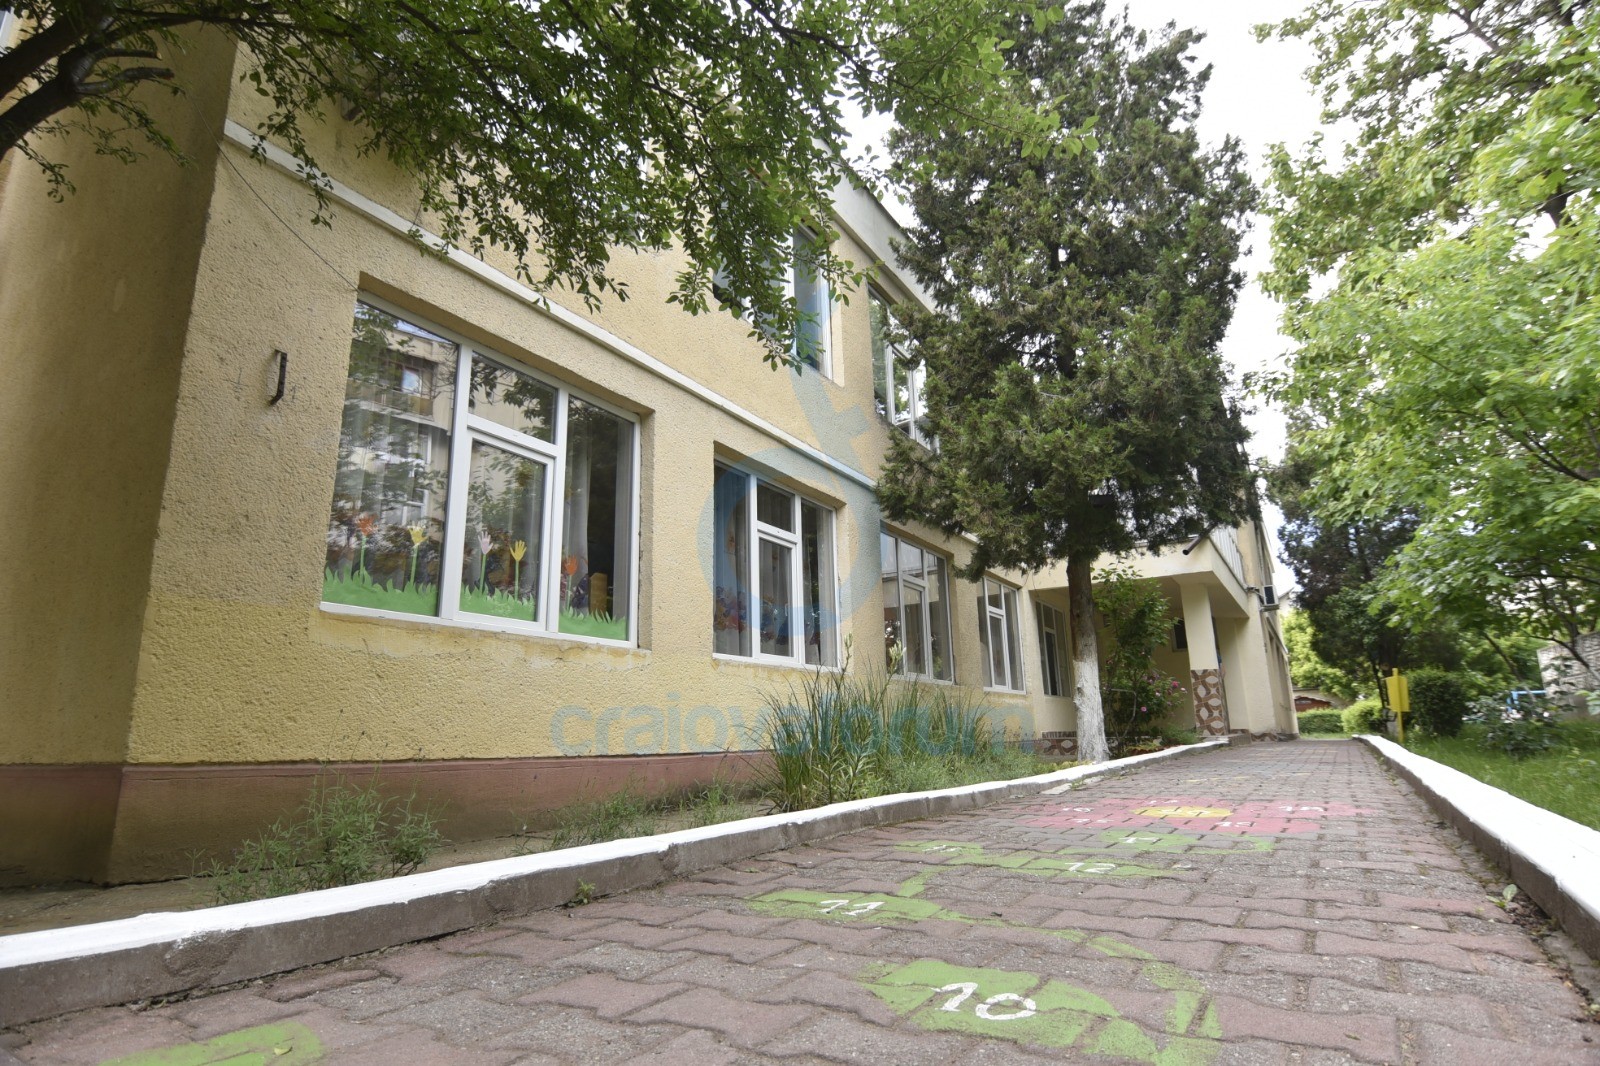 Grădiniţa cu Program Prelungit Ion Creangă din Craiova este una dintre unităţile de învăţământ fără site.